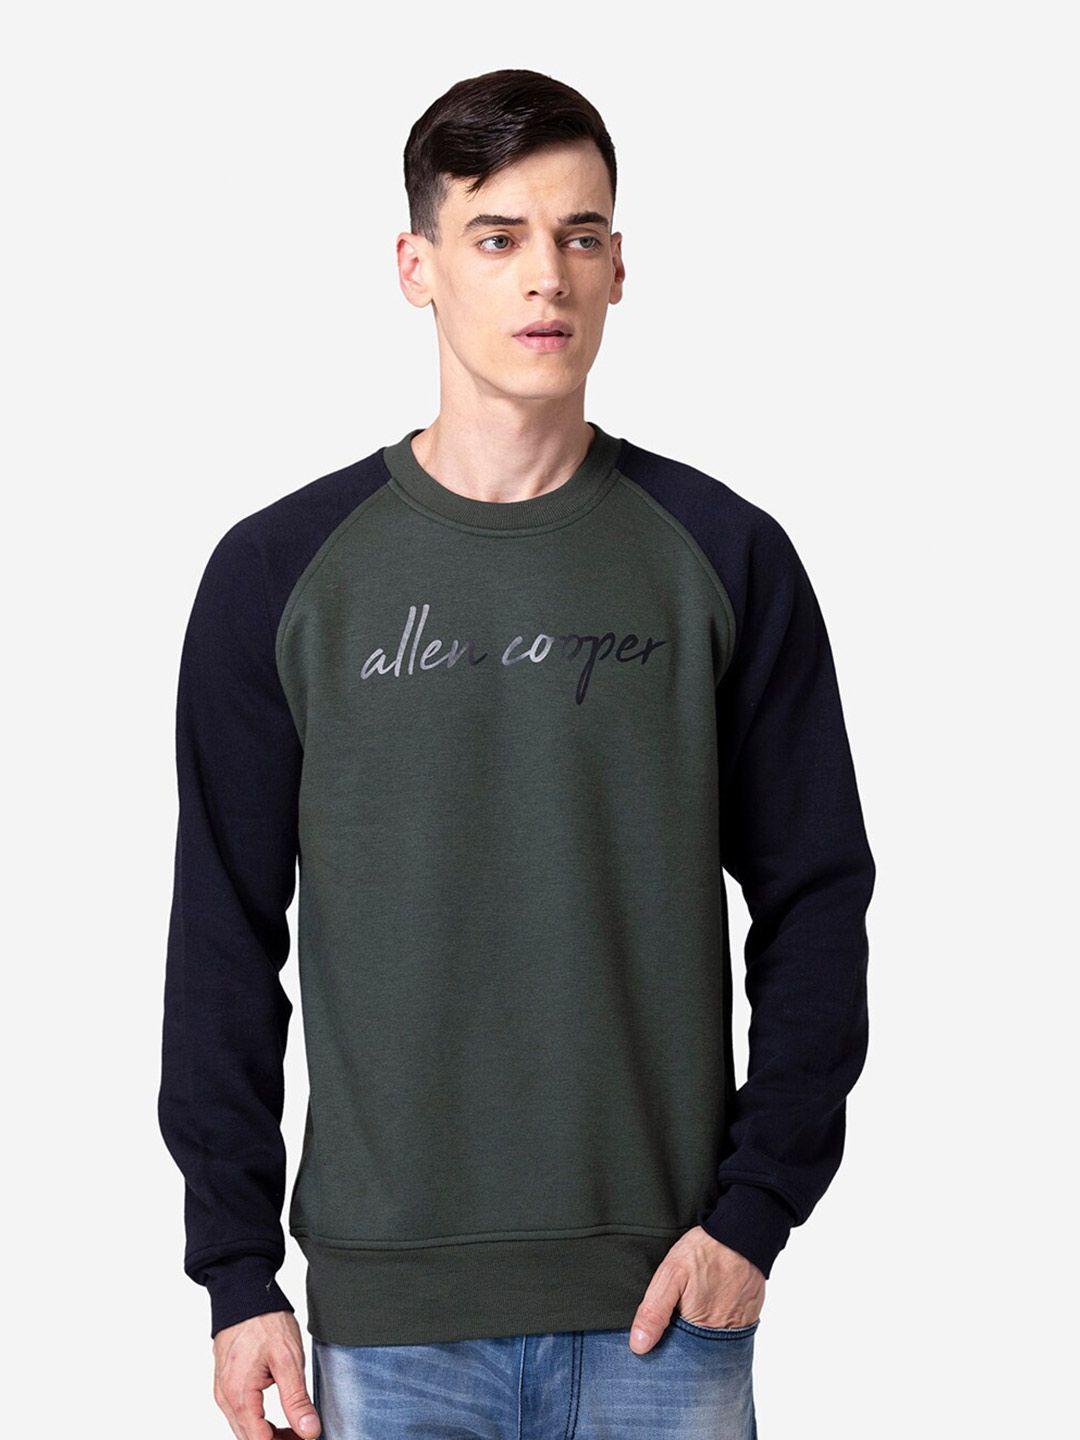 allen-cooper-men-raglan-sleeves-cotton-pullover-sweatshirt